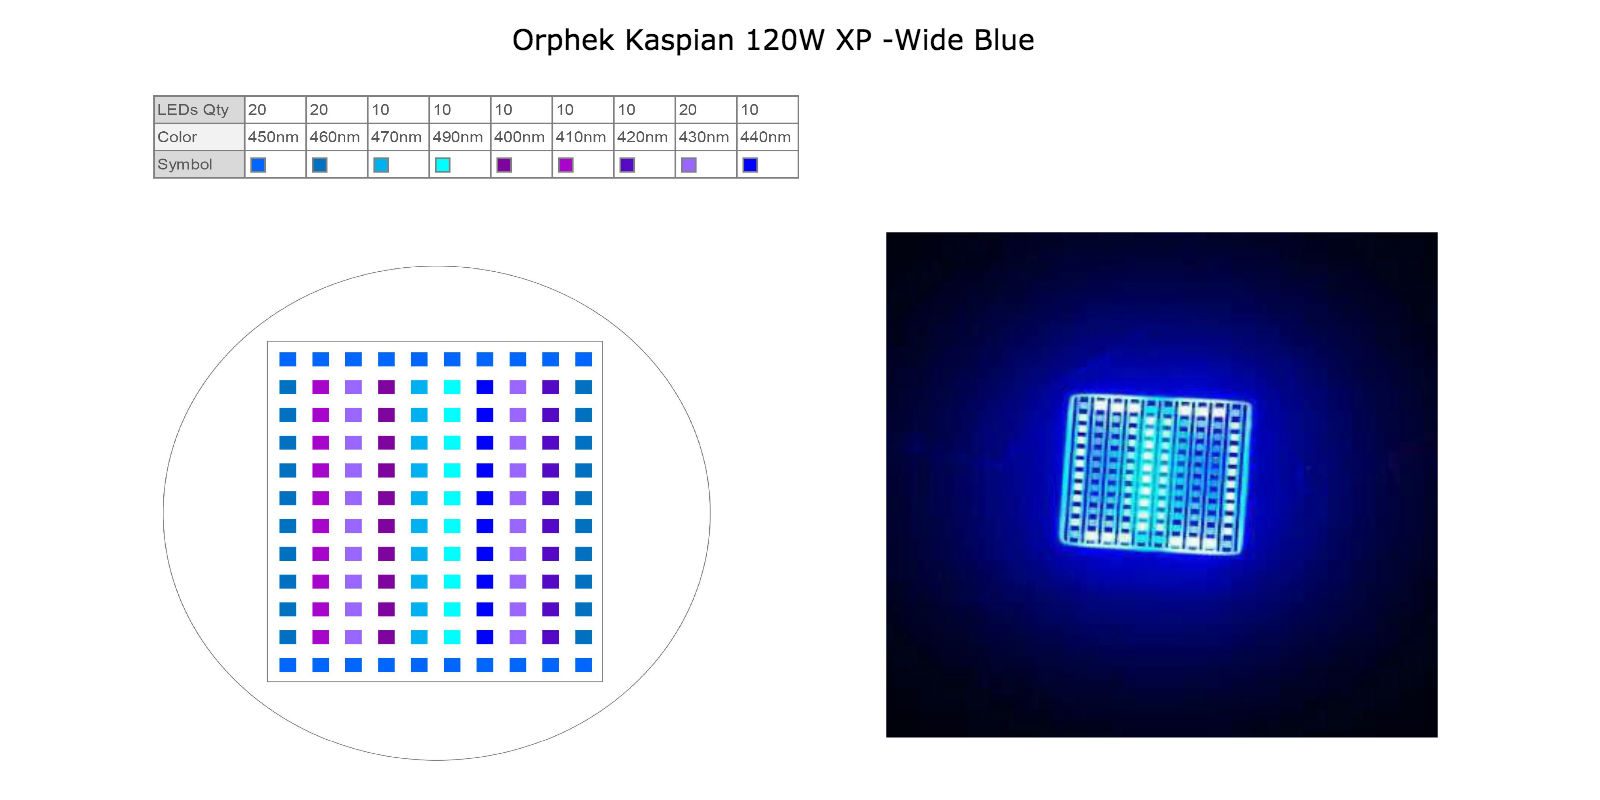 Orphek-Kaspian -120W- XP -wide blue